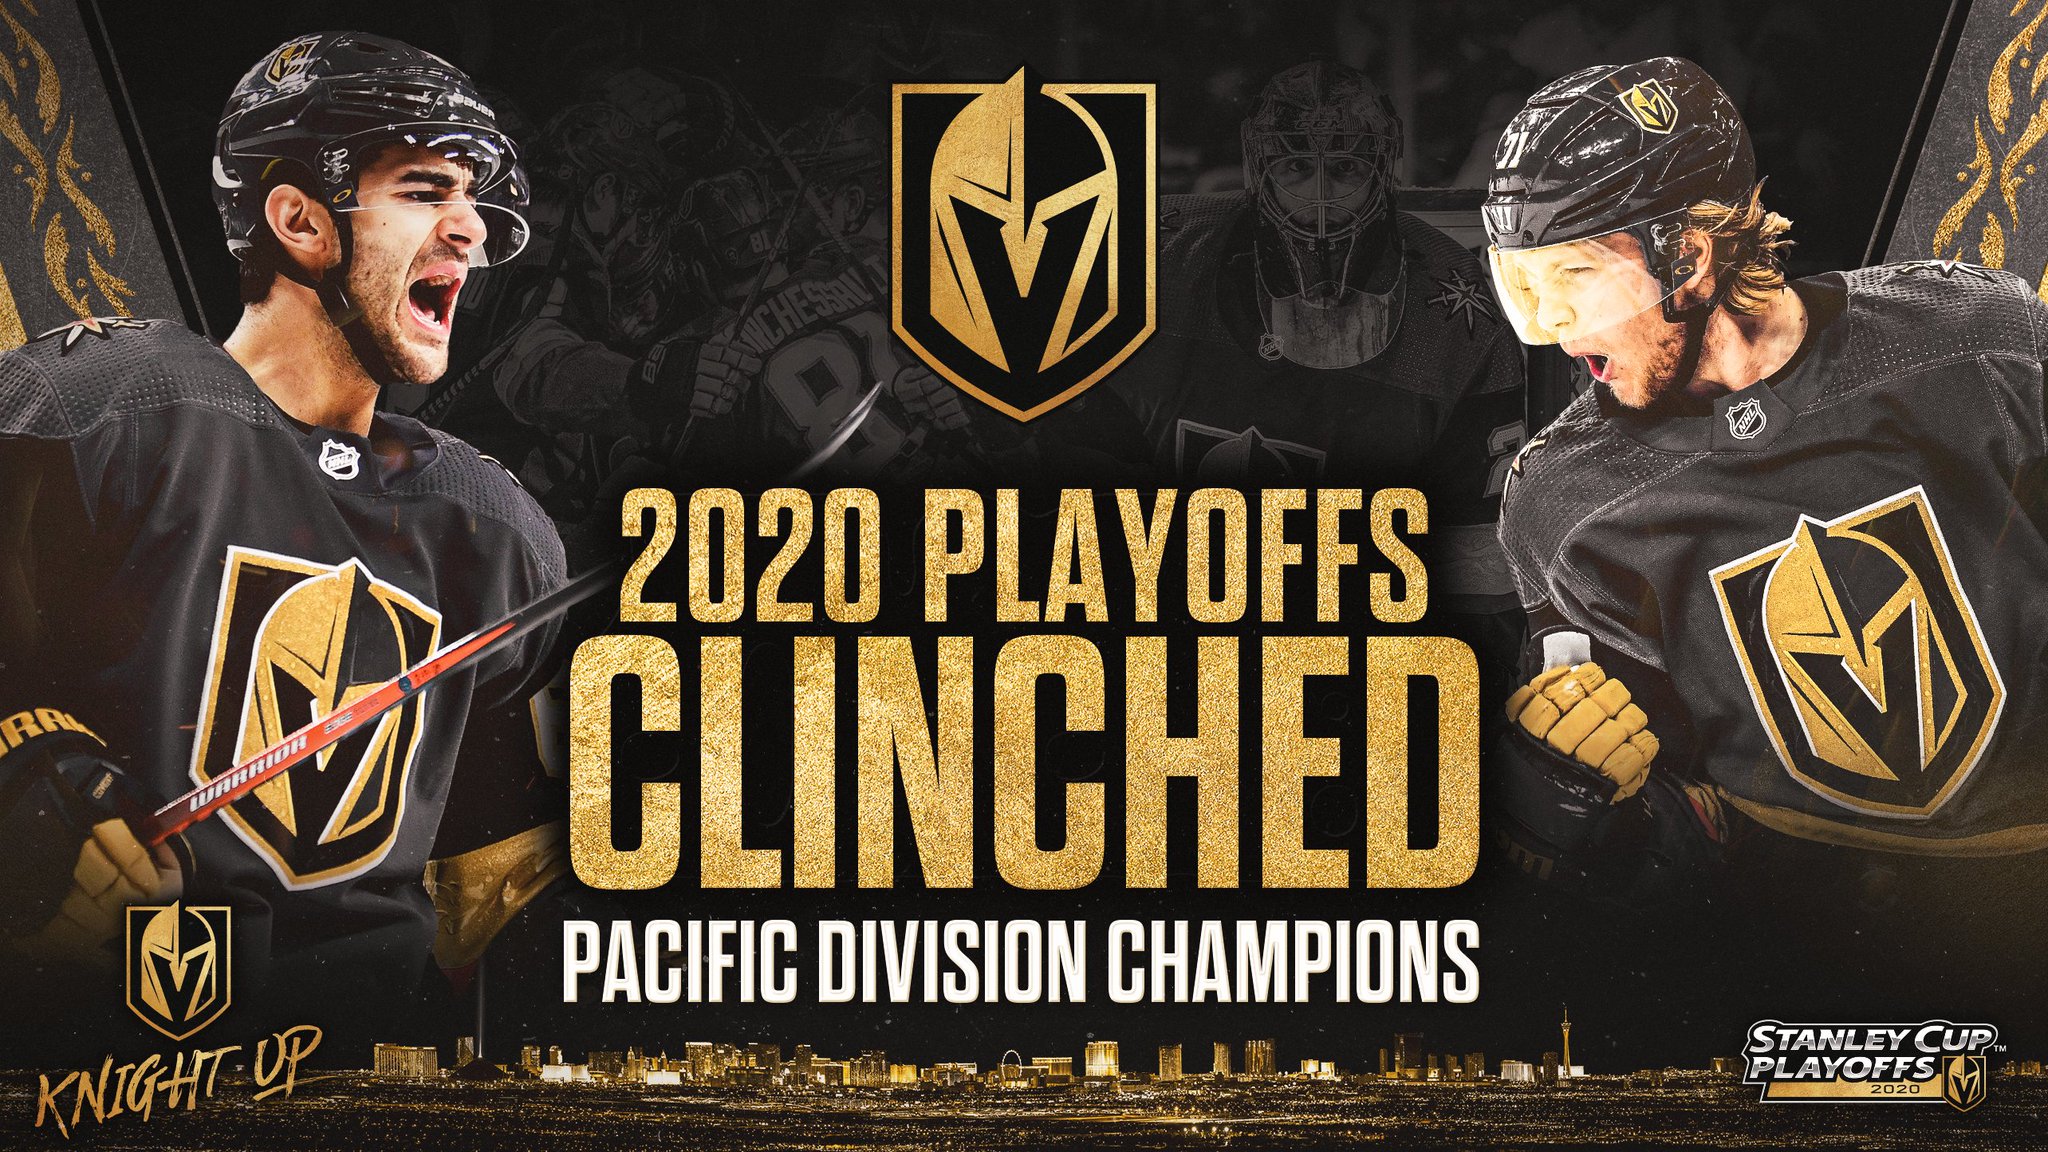 Vegas Golden Knights 2023 Stanley Cup Champions Decal / Sticker, vinyl  sticker